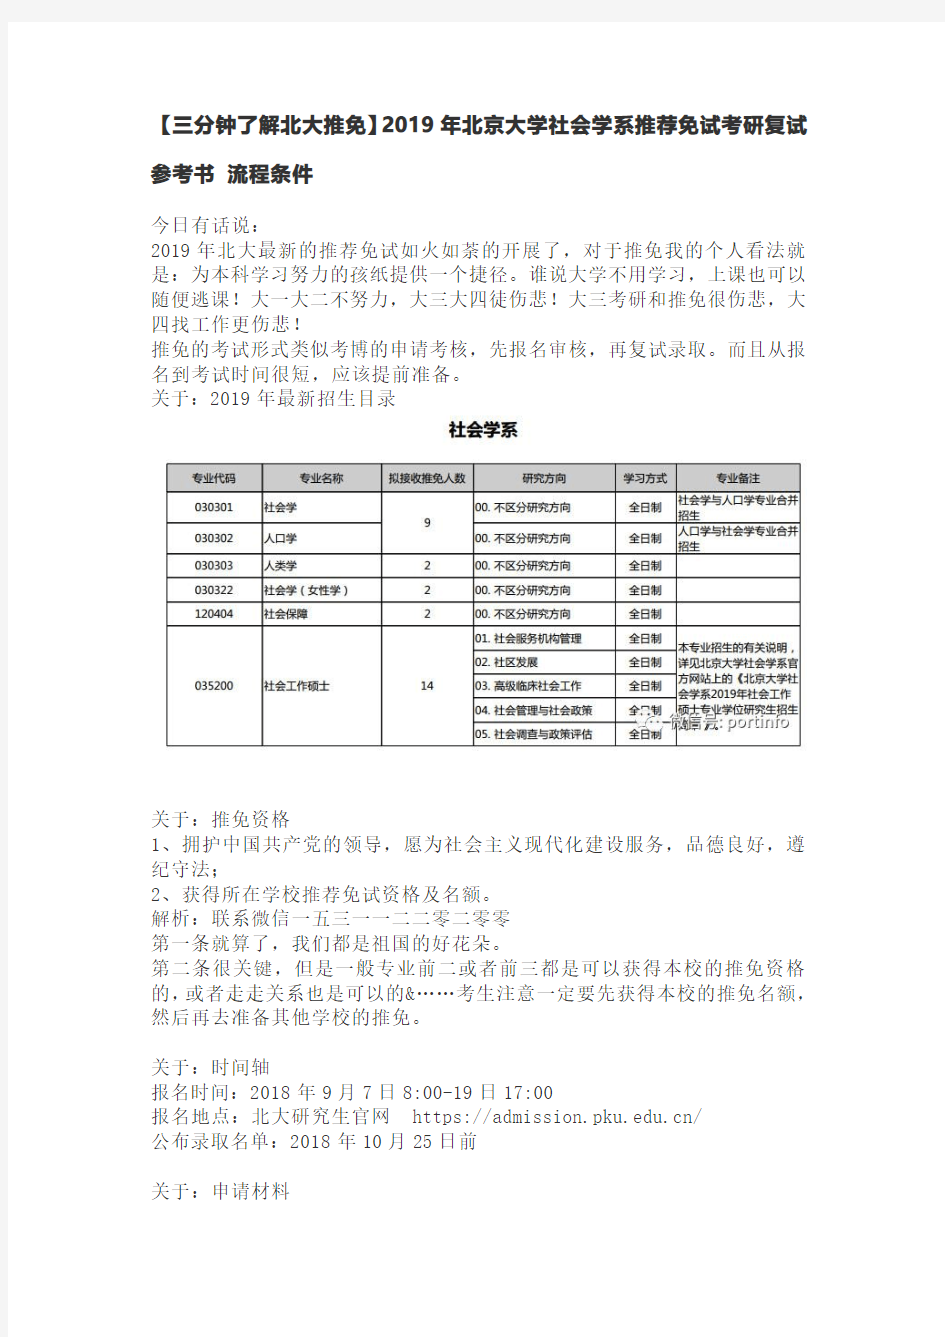 【三分钟了解北大推免】2019年北京大学社会学系推荐免试考研复试参考书 流程条件